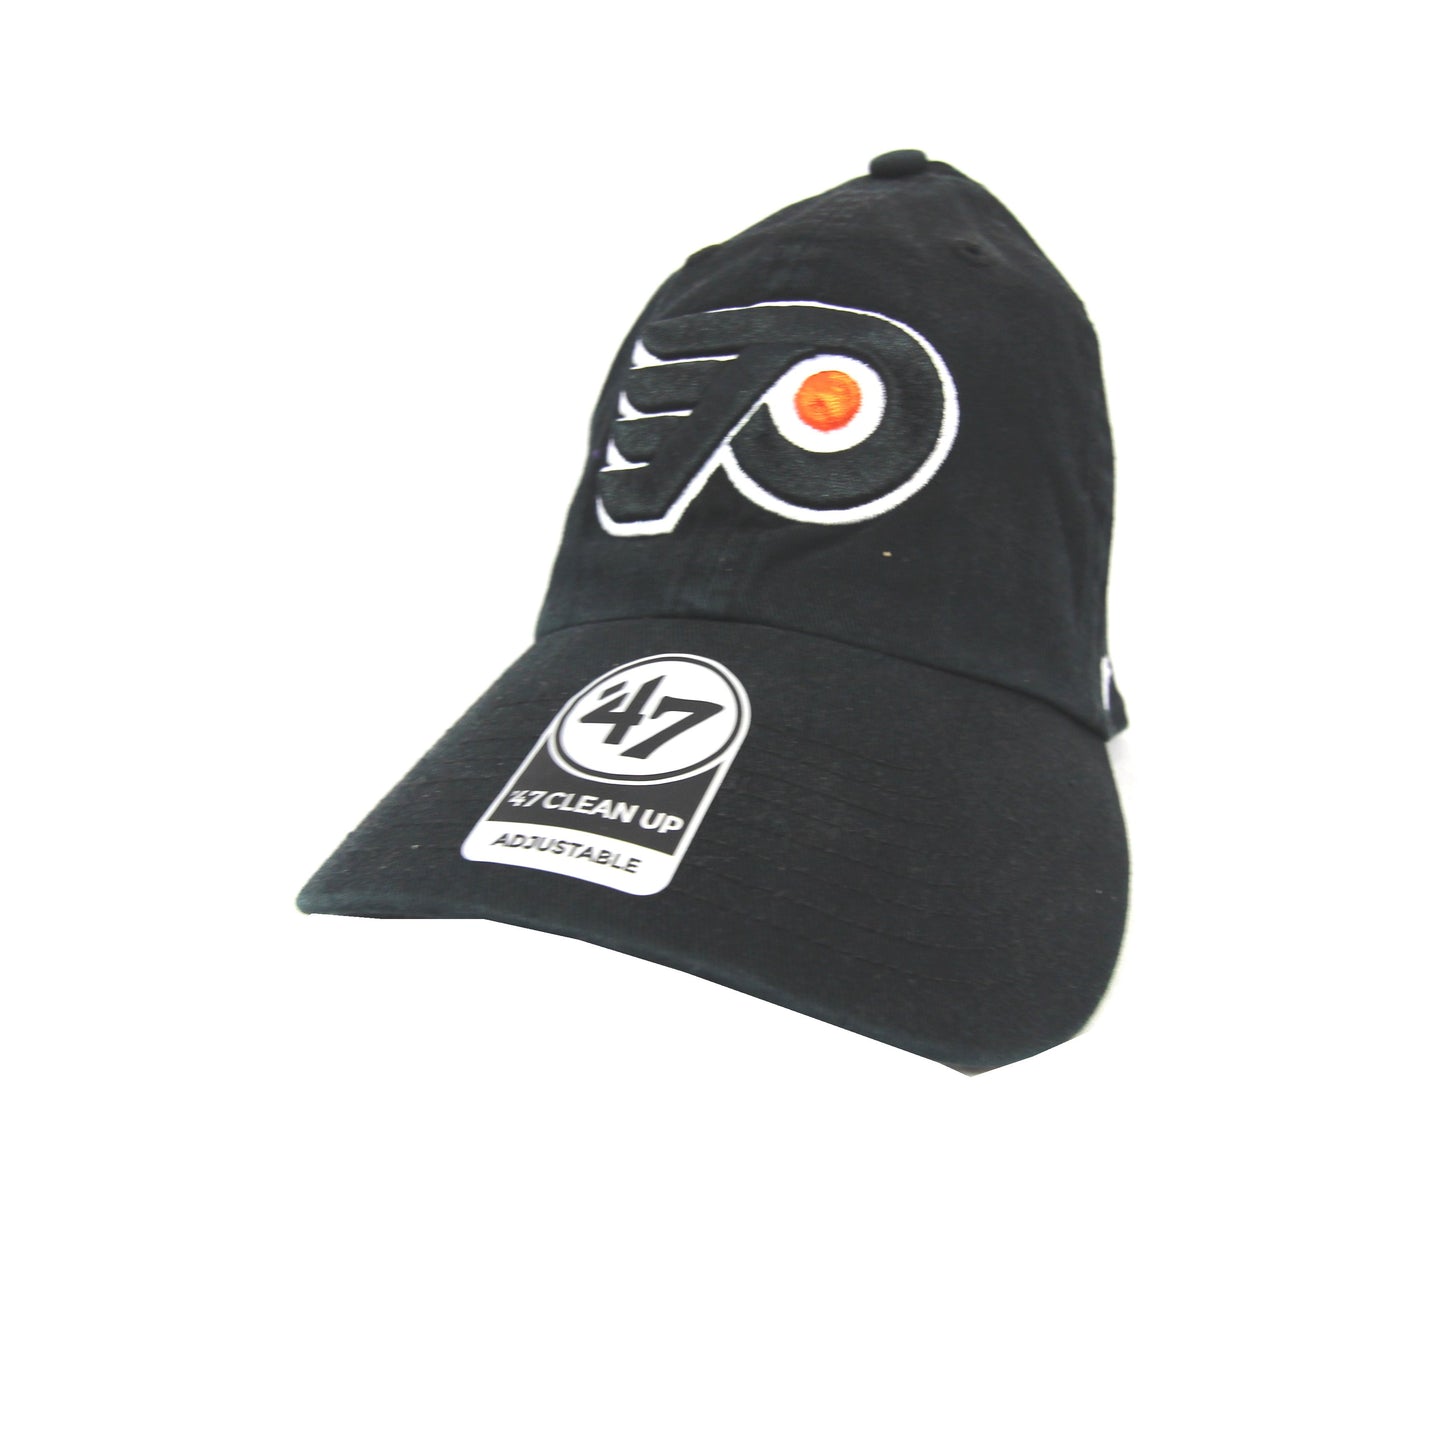 NHL Caps / Casquettes LNH - Call / Appelez